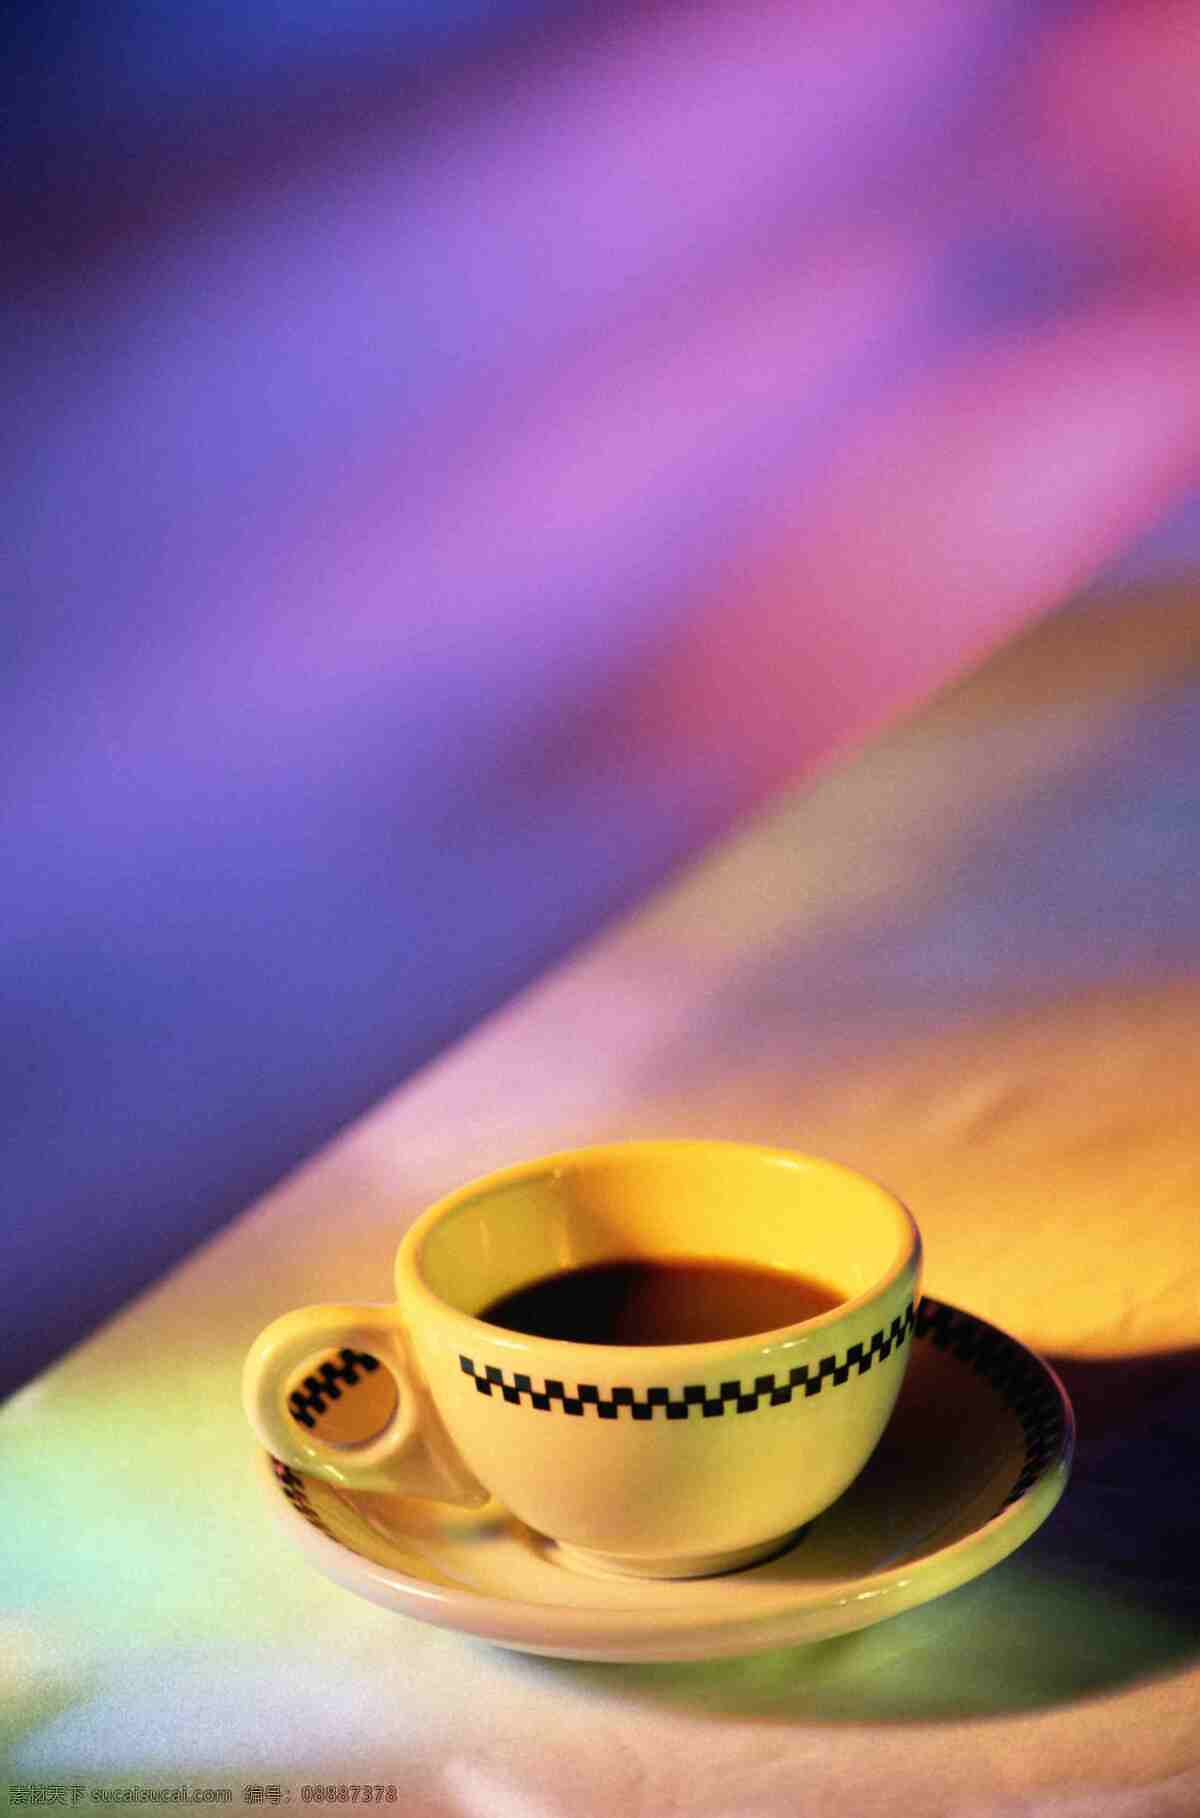 咖啡 休闲 咖啡杯 咖啡碟 轻松 闲适 生活百科 生活素材 摄影图库